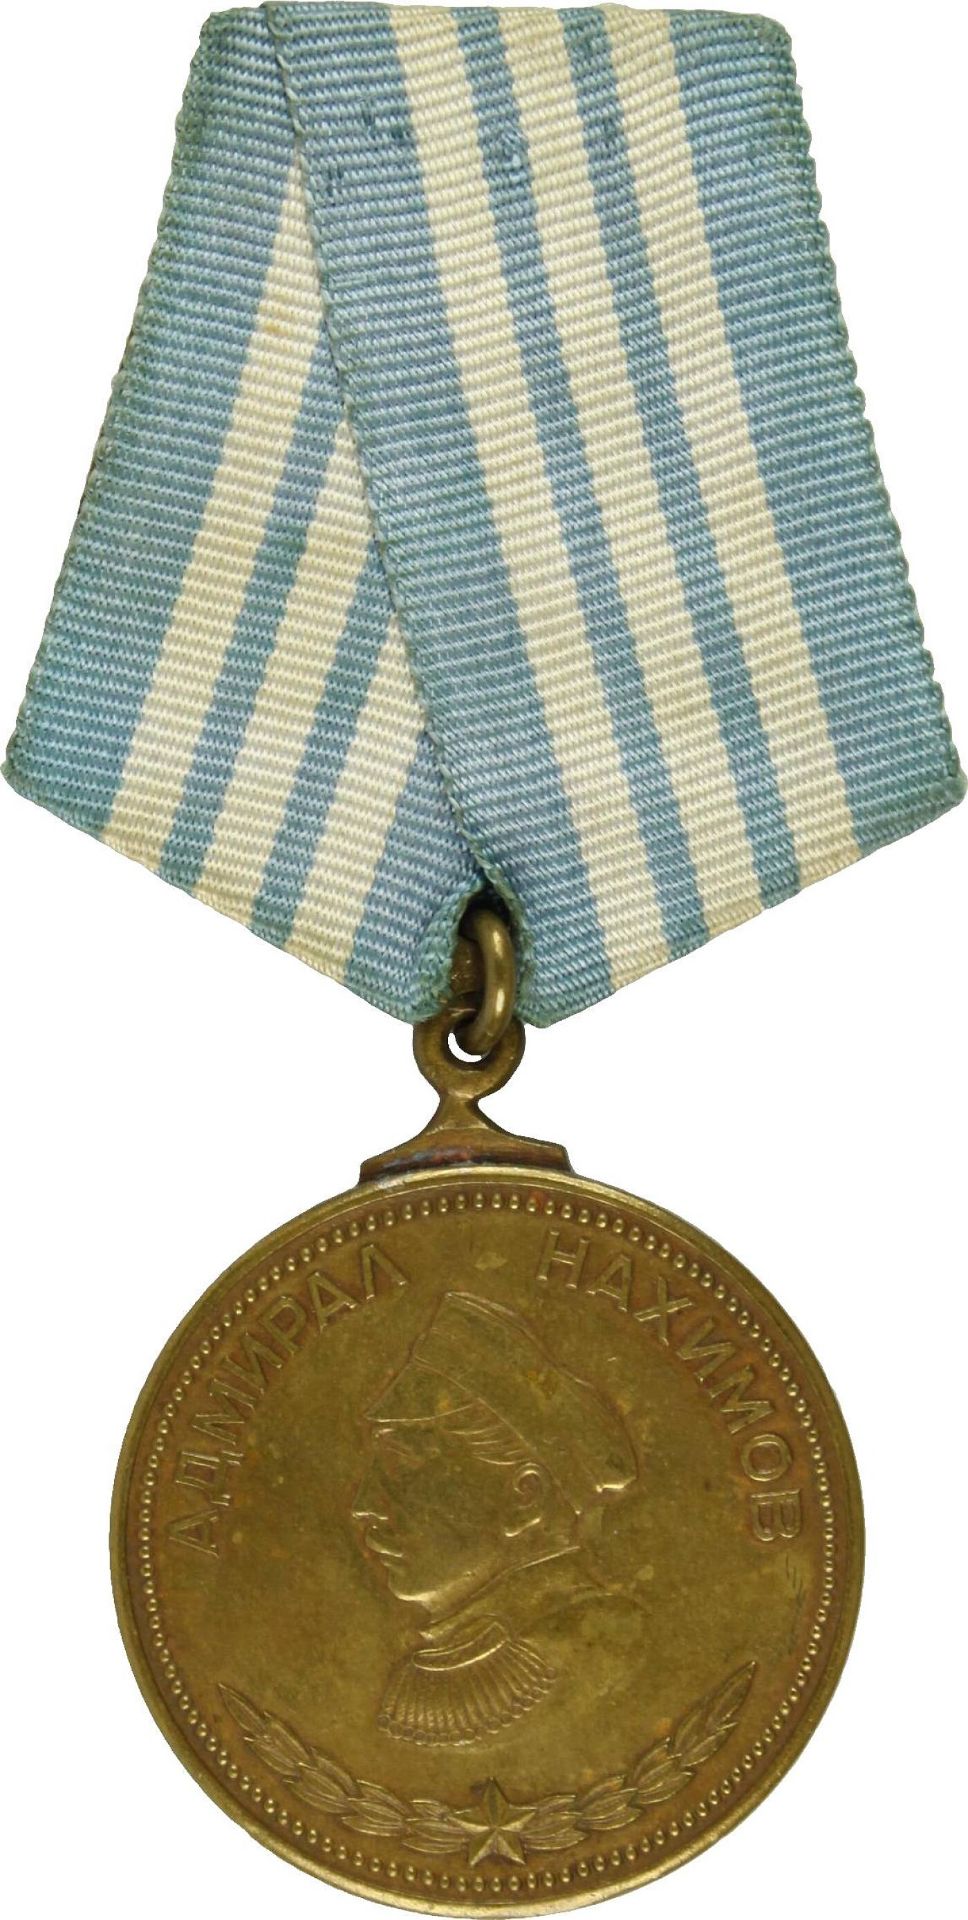 Nachimow-Medaille,